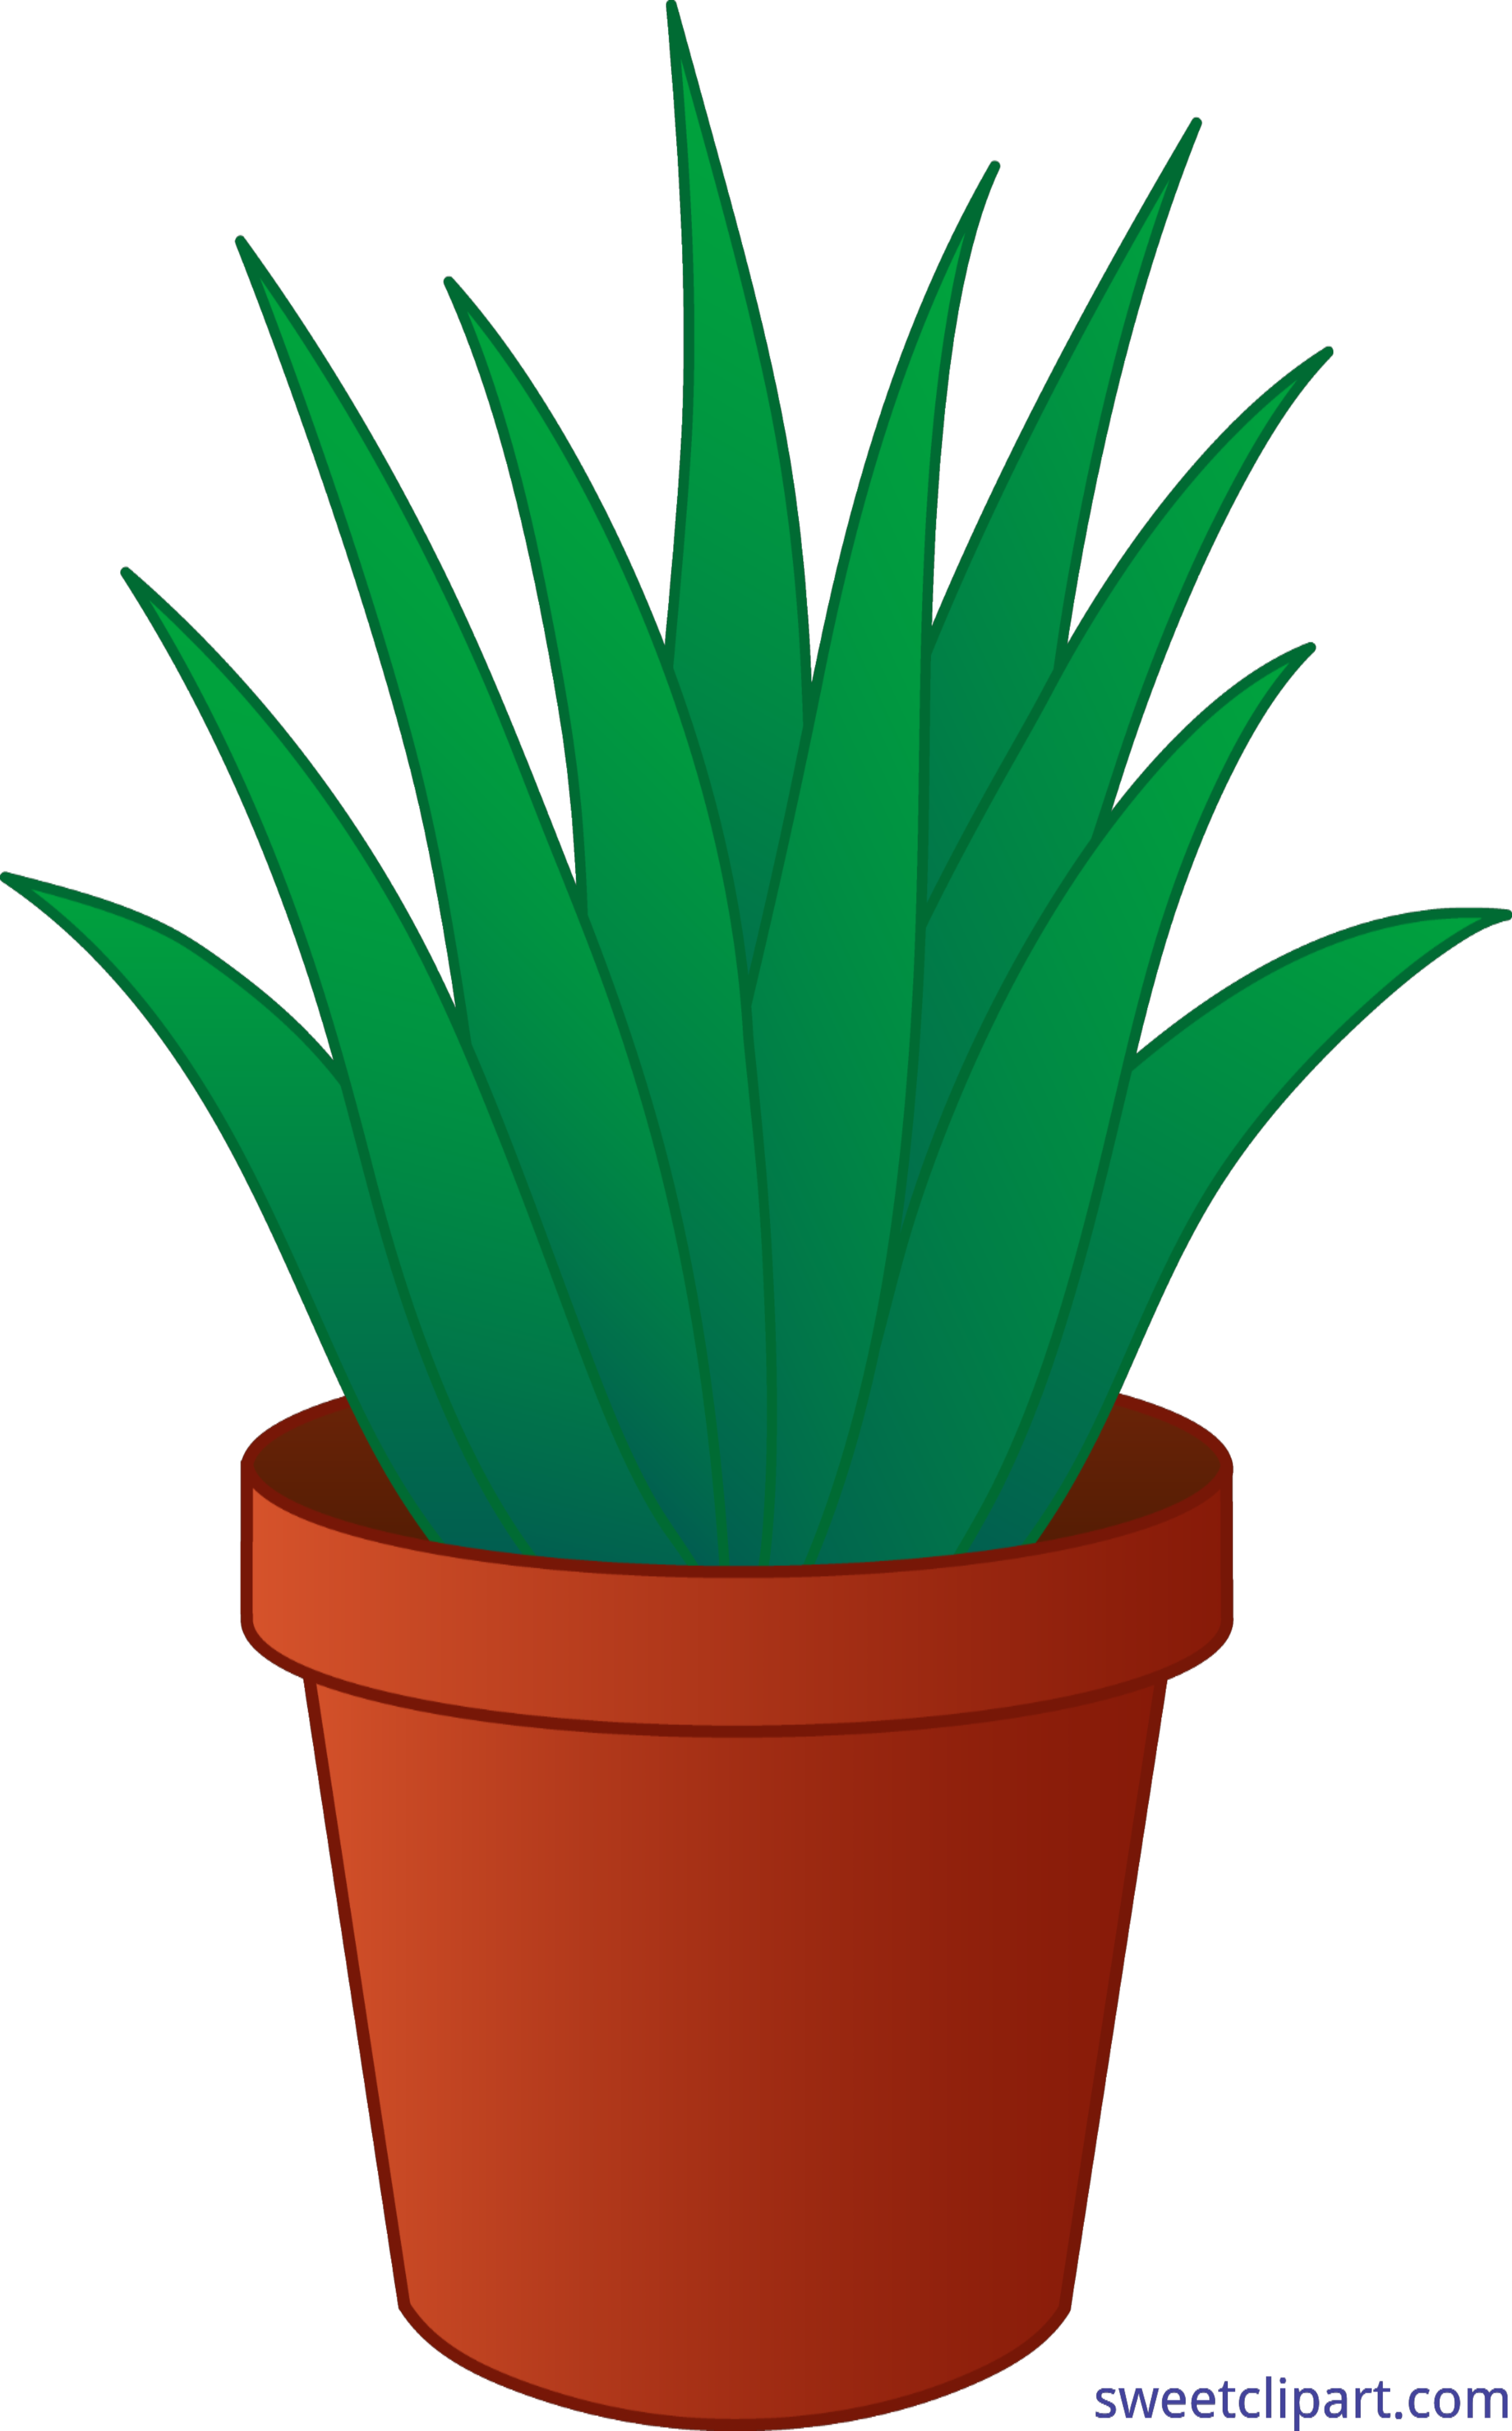 https://sweetclipart.com/wp-content/uploads/Aloe-Vera-Plant-Pot-Clip-Art.png